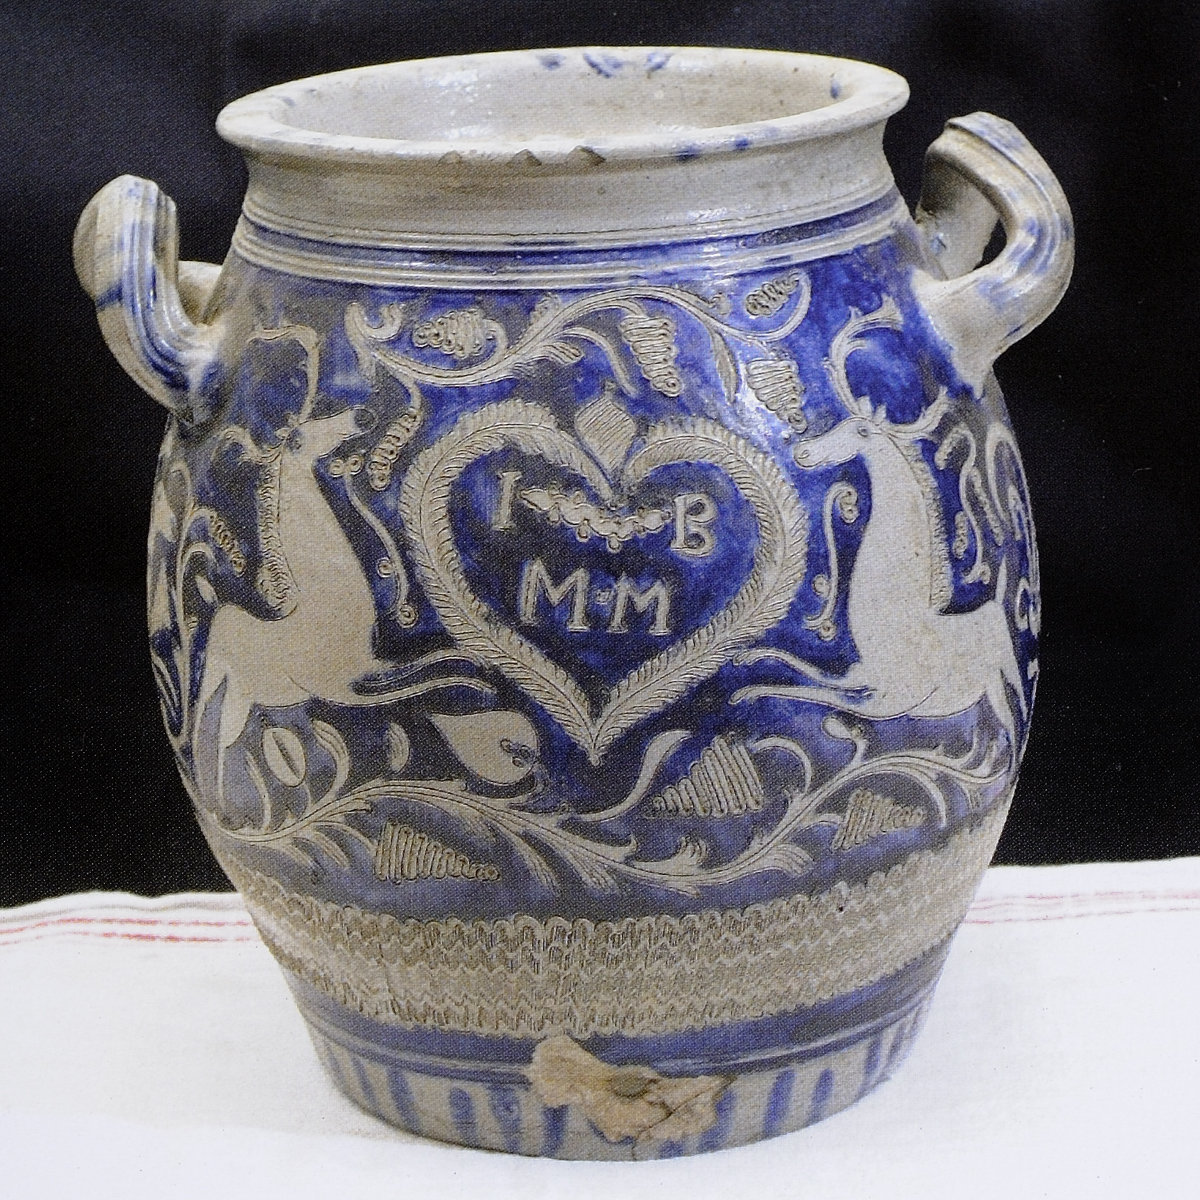 Historique de la poterie en grès de Betschdorf